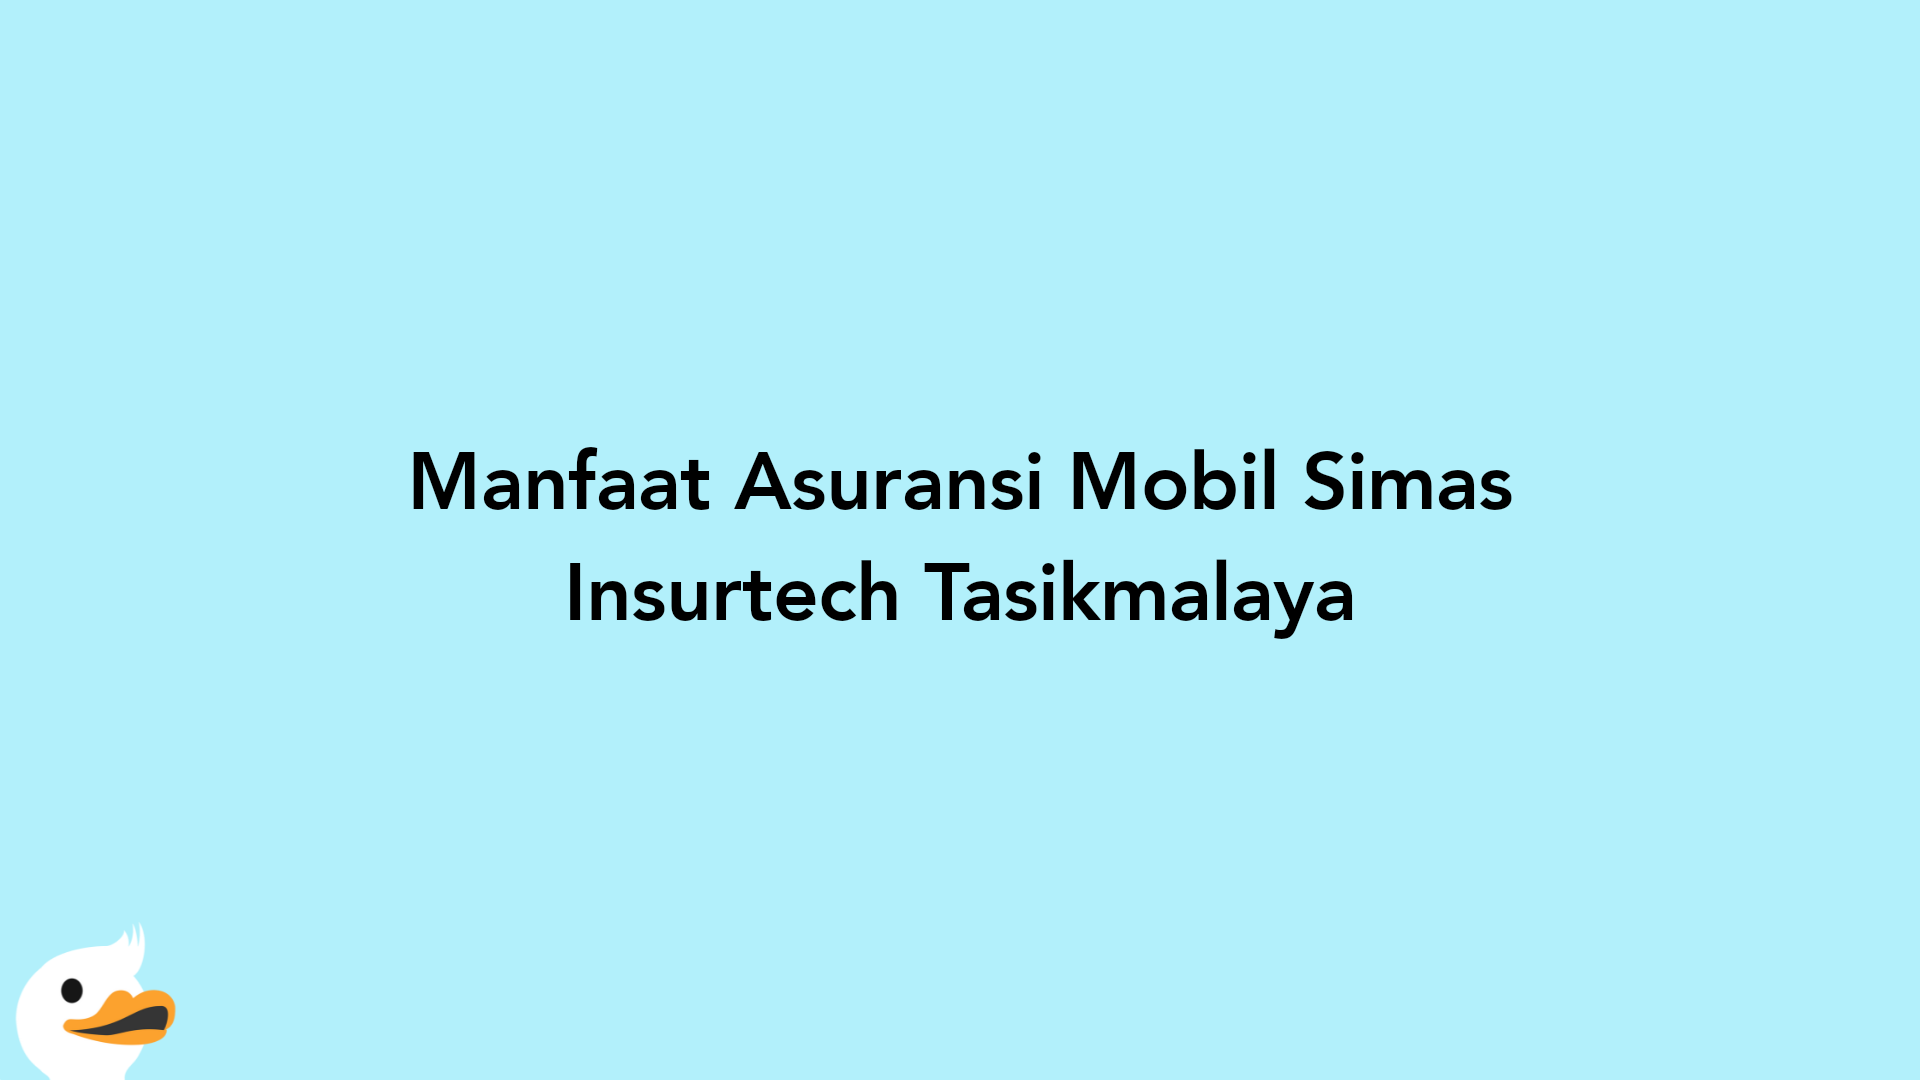 Manfaat Asuransi Mobil Simas Insurtech Tasikmalaya